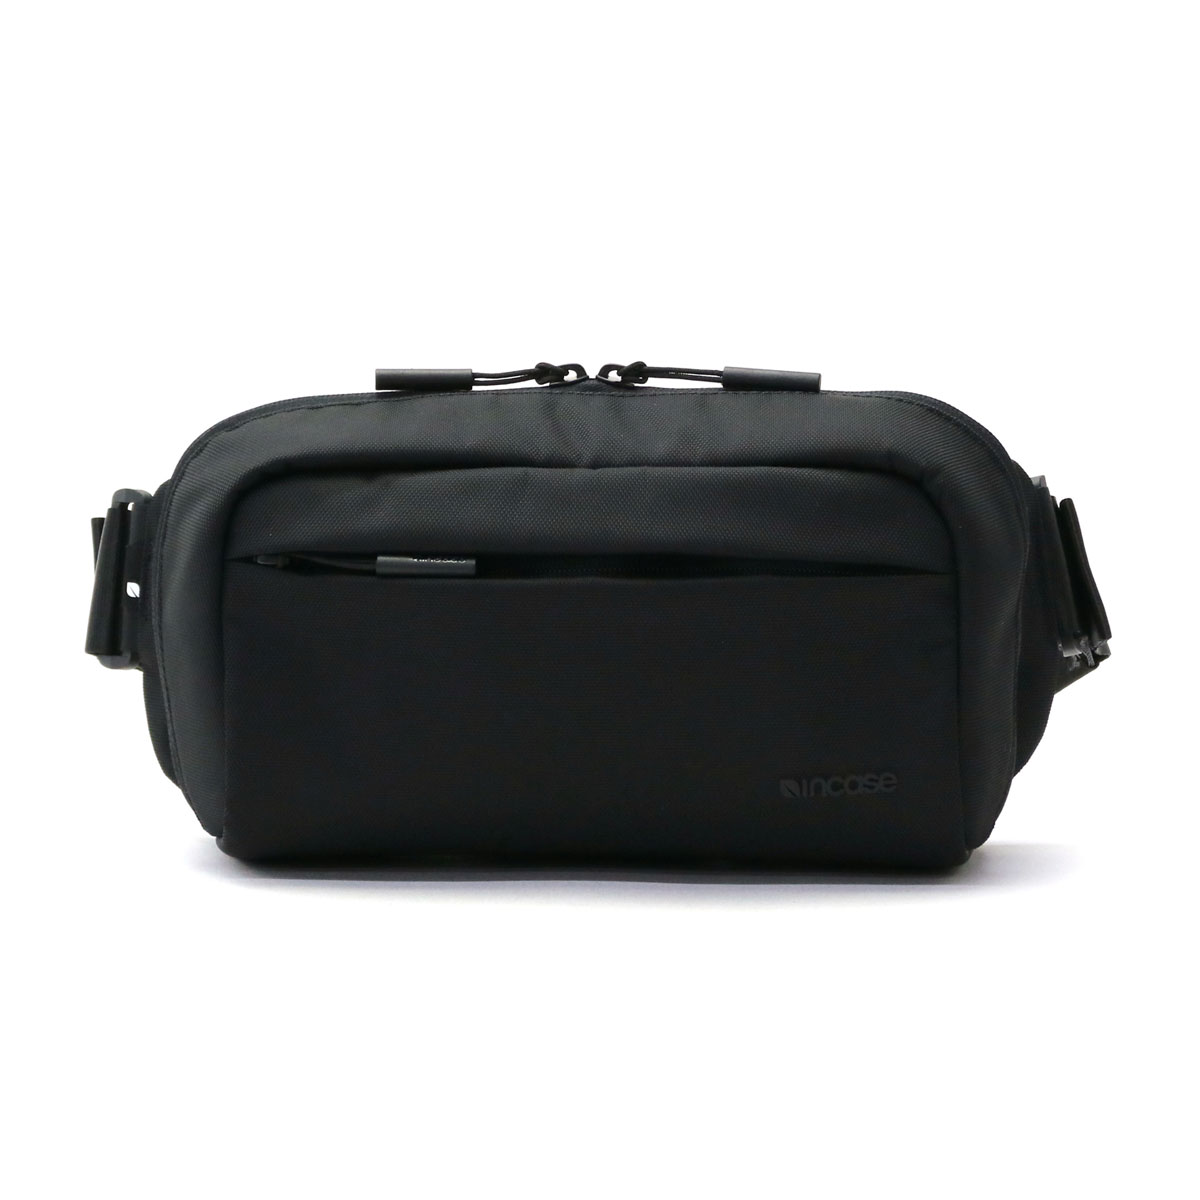 【日本正規品】incase インケース Incase Camera Side Bag カメラバッグ